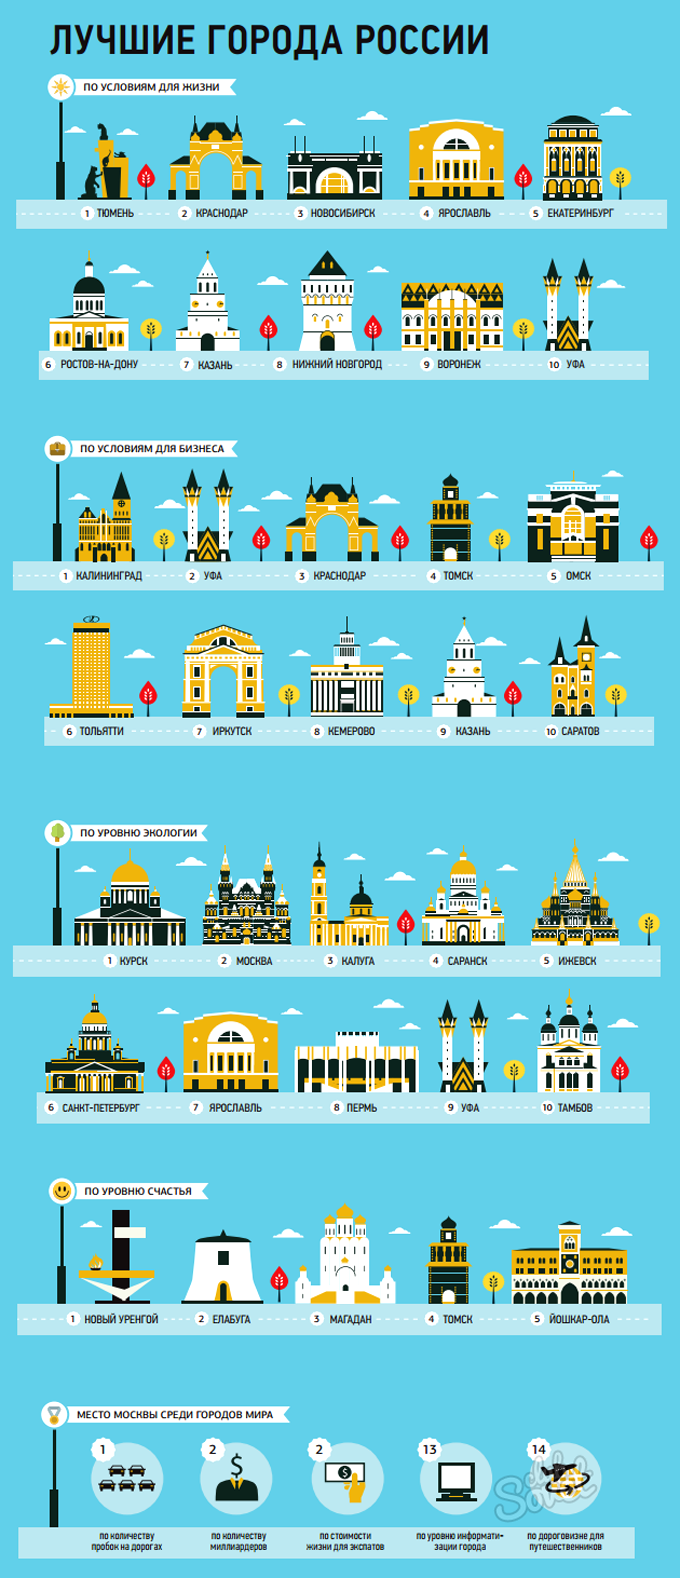 Инфографика "Лучшие города России"